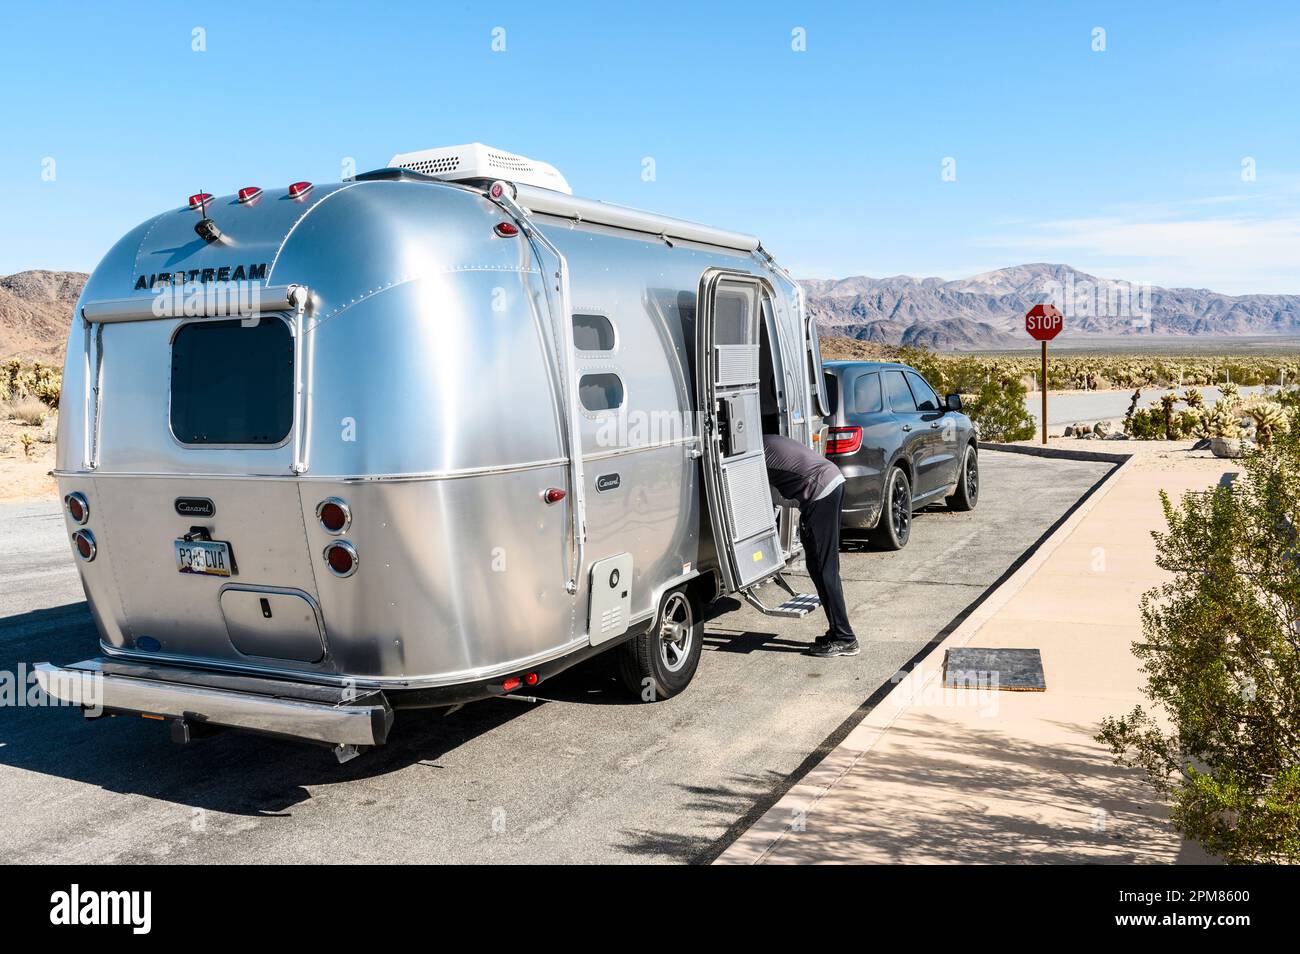 États-Unis, Californie, région de Greater Palm Springss, parc national de Joshua Tree, AirStream Caravan sur le côté de la route Banque D'Images